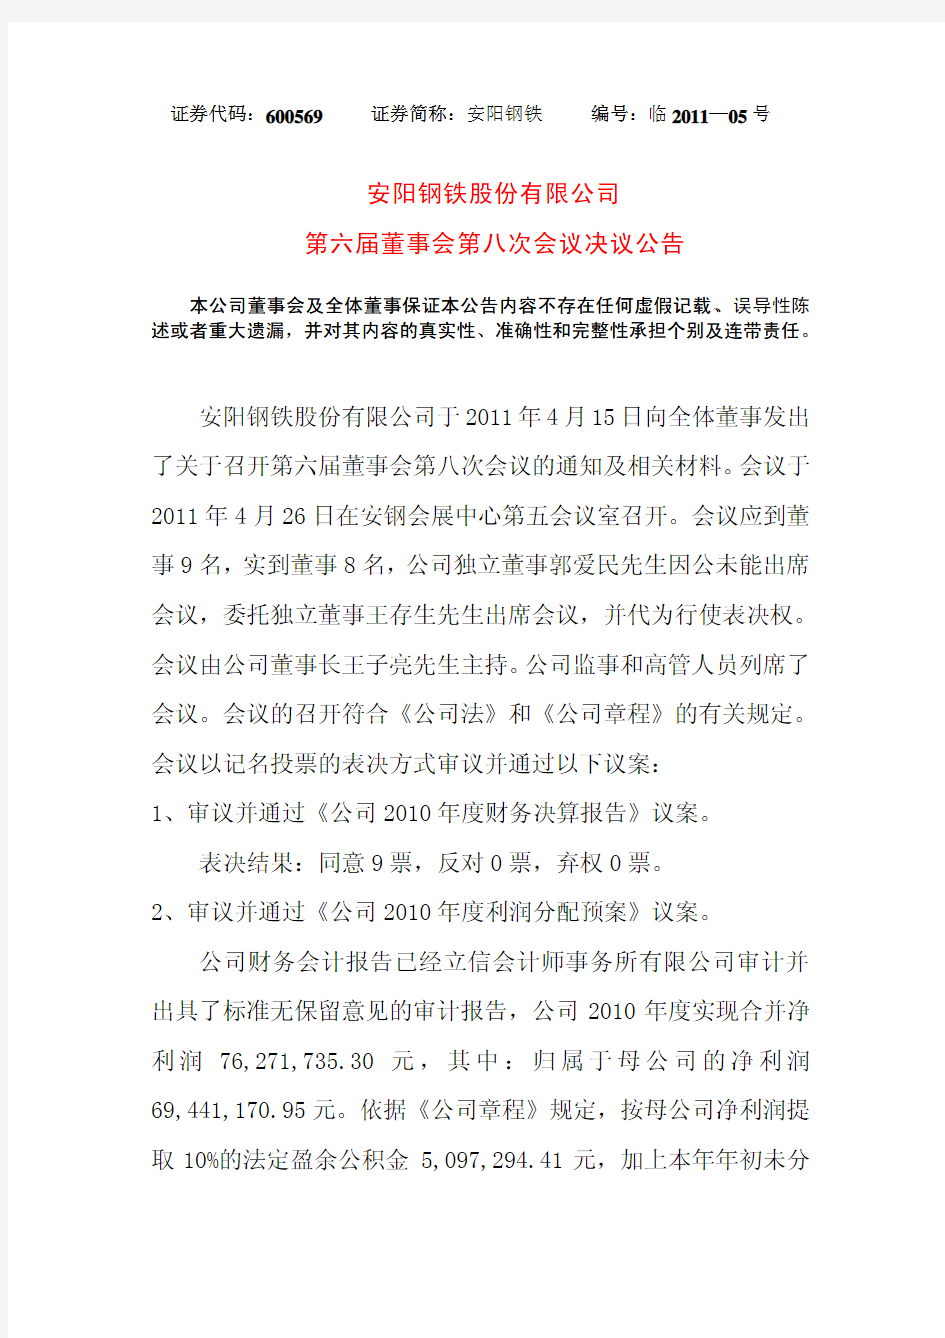 安阳钢铁股份有限公司于2011年4月15日向全体董事发出